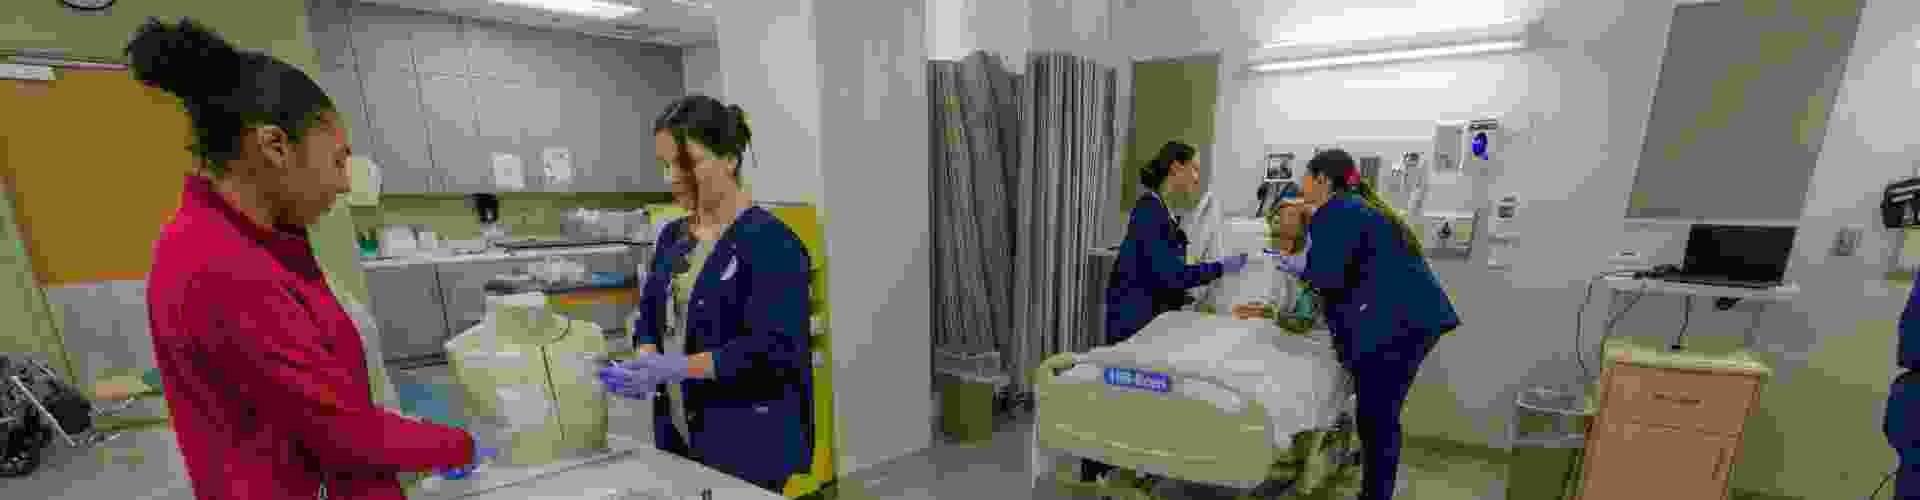 tour-gsn-nursing-skills-lab-1920x500.png